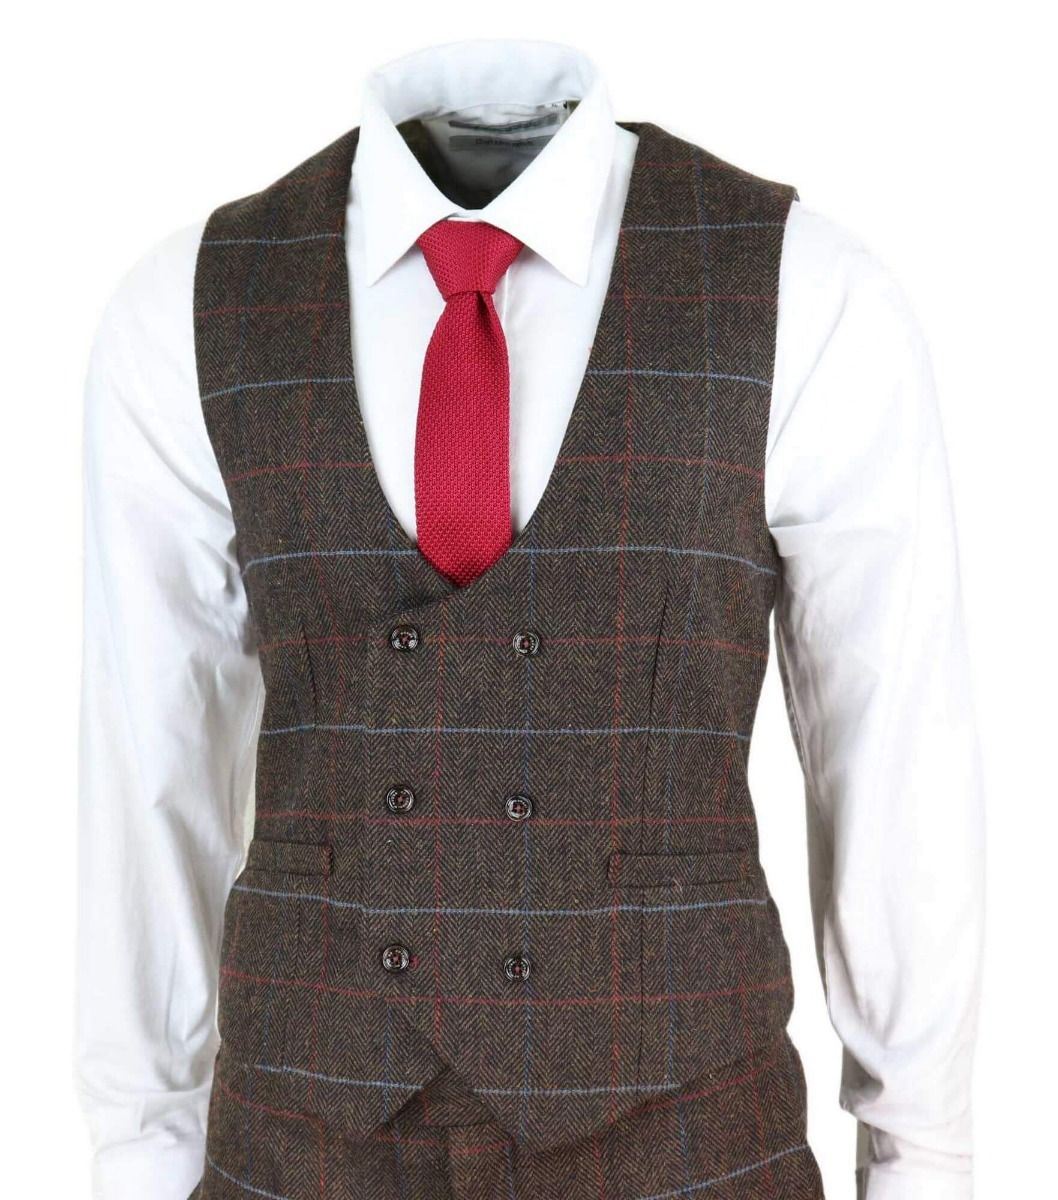 Mens 3 Piece Dark Brown Check Tweed Herringbone Vintage Classic Suit